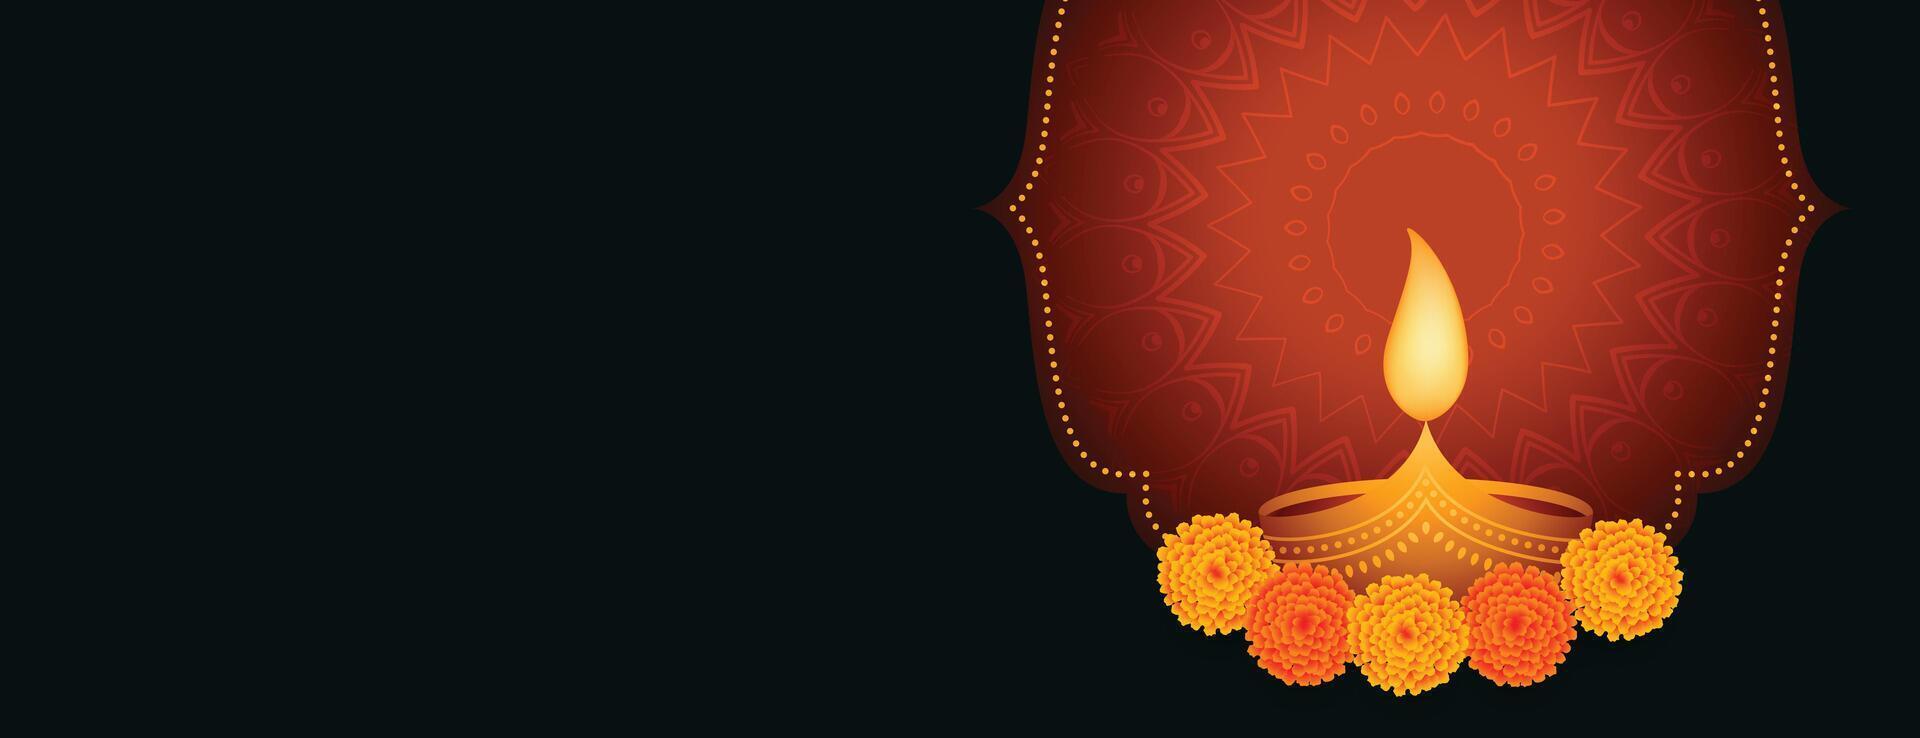 Lycklig diwali festival baner med diya och blomma vektor